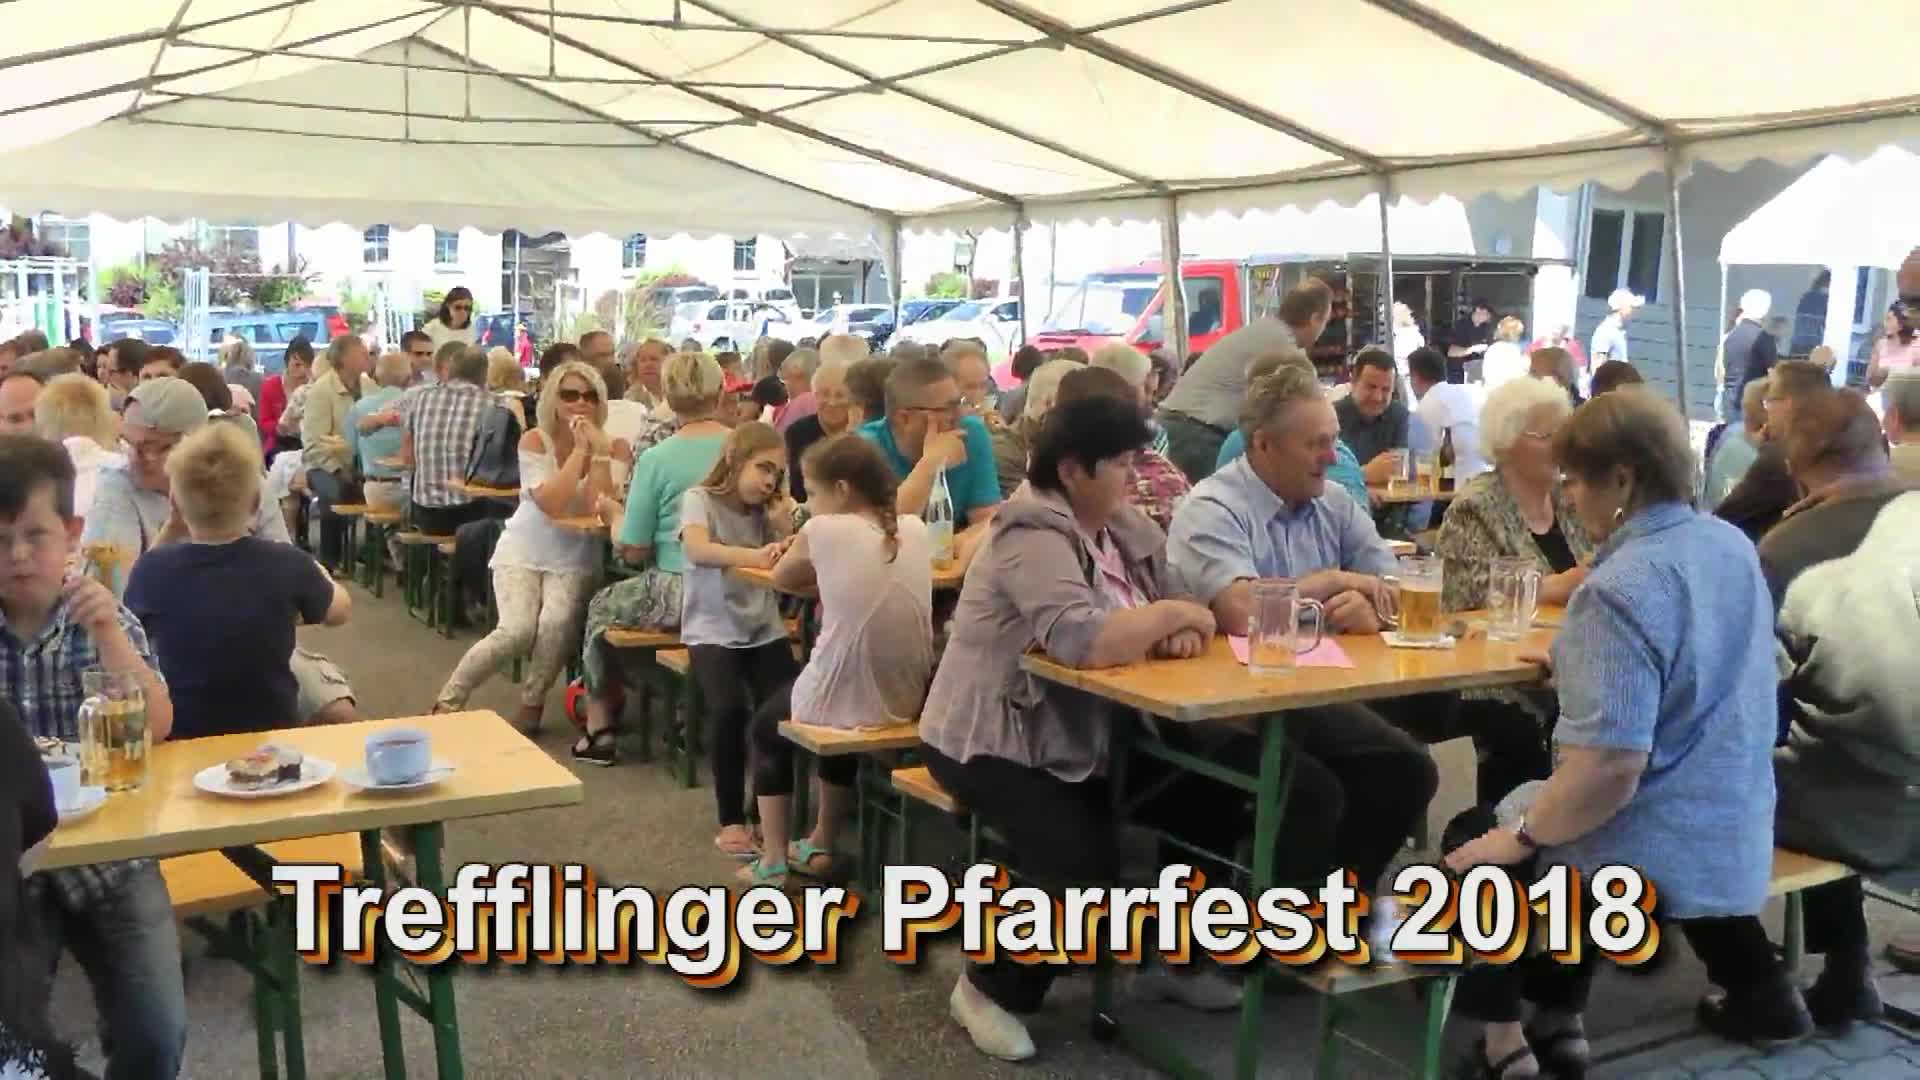 Trefflinger Pfarrfest 2018